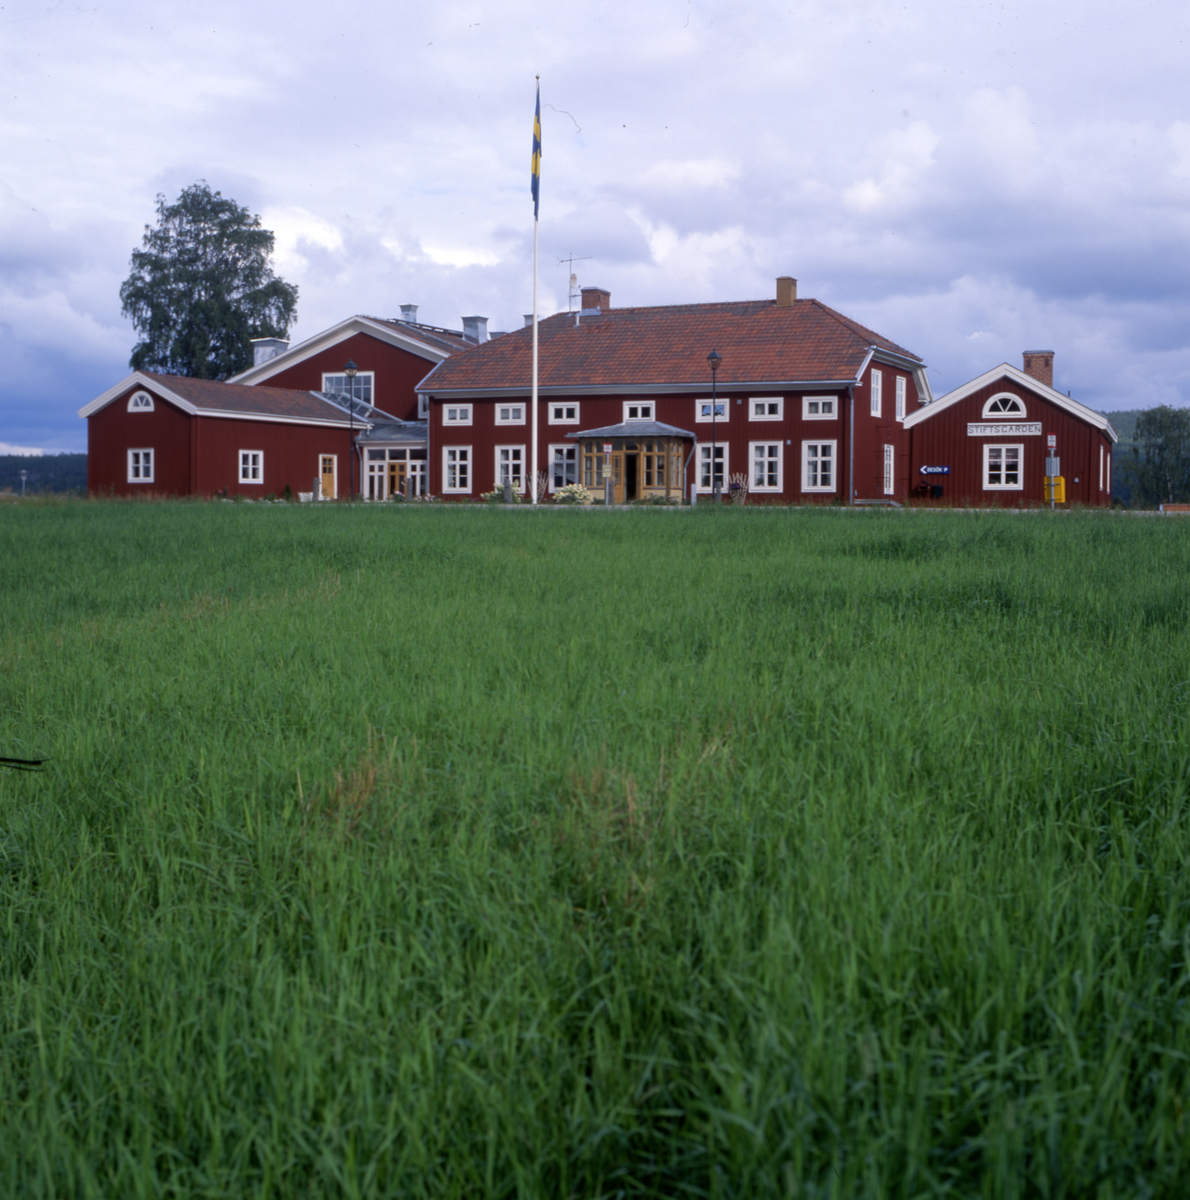 Gård med flera byggnader, glasveranda och flaggstång. Framför gården är marken gräsbevuxen.